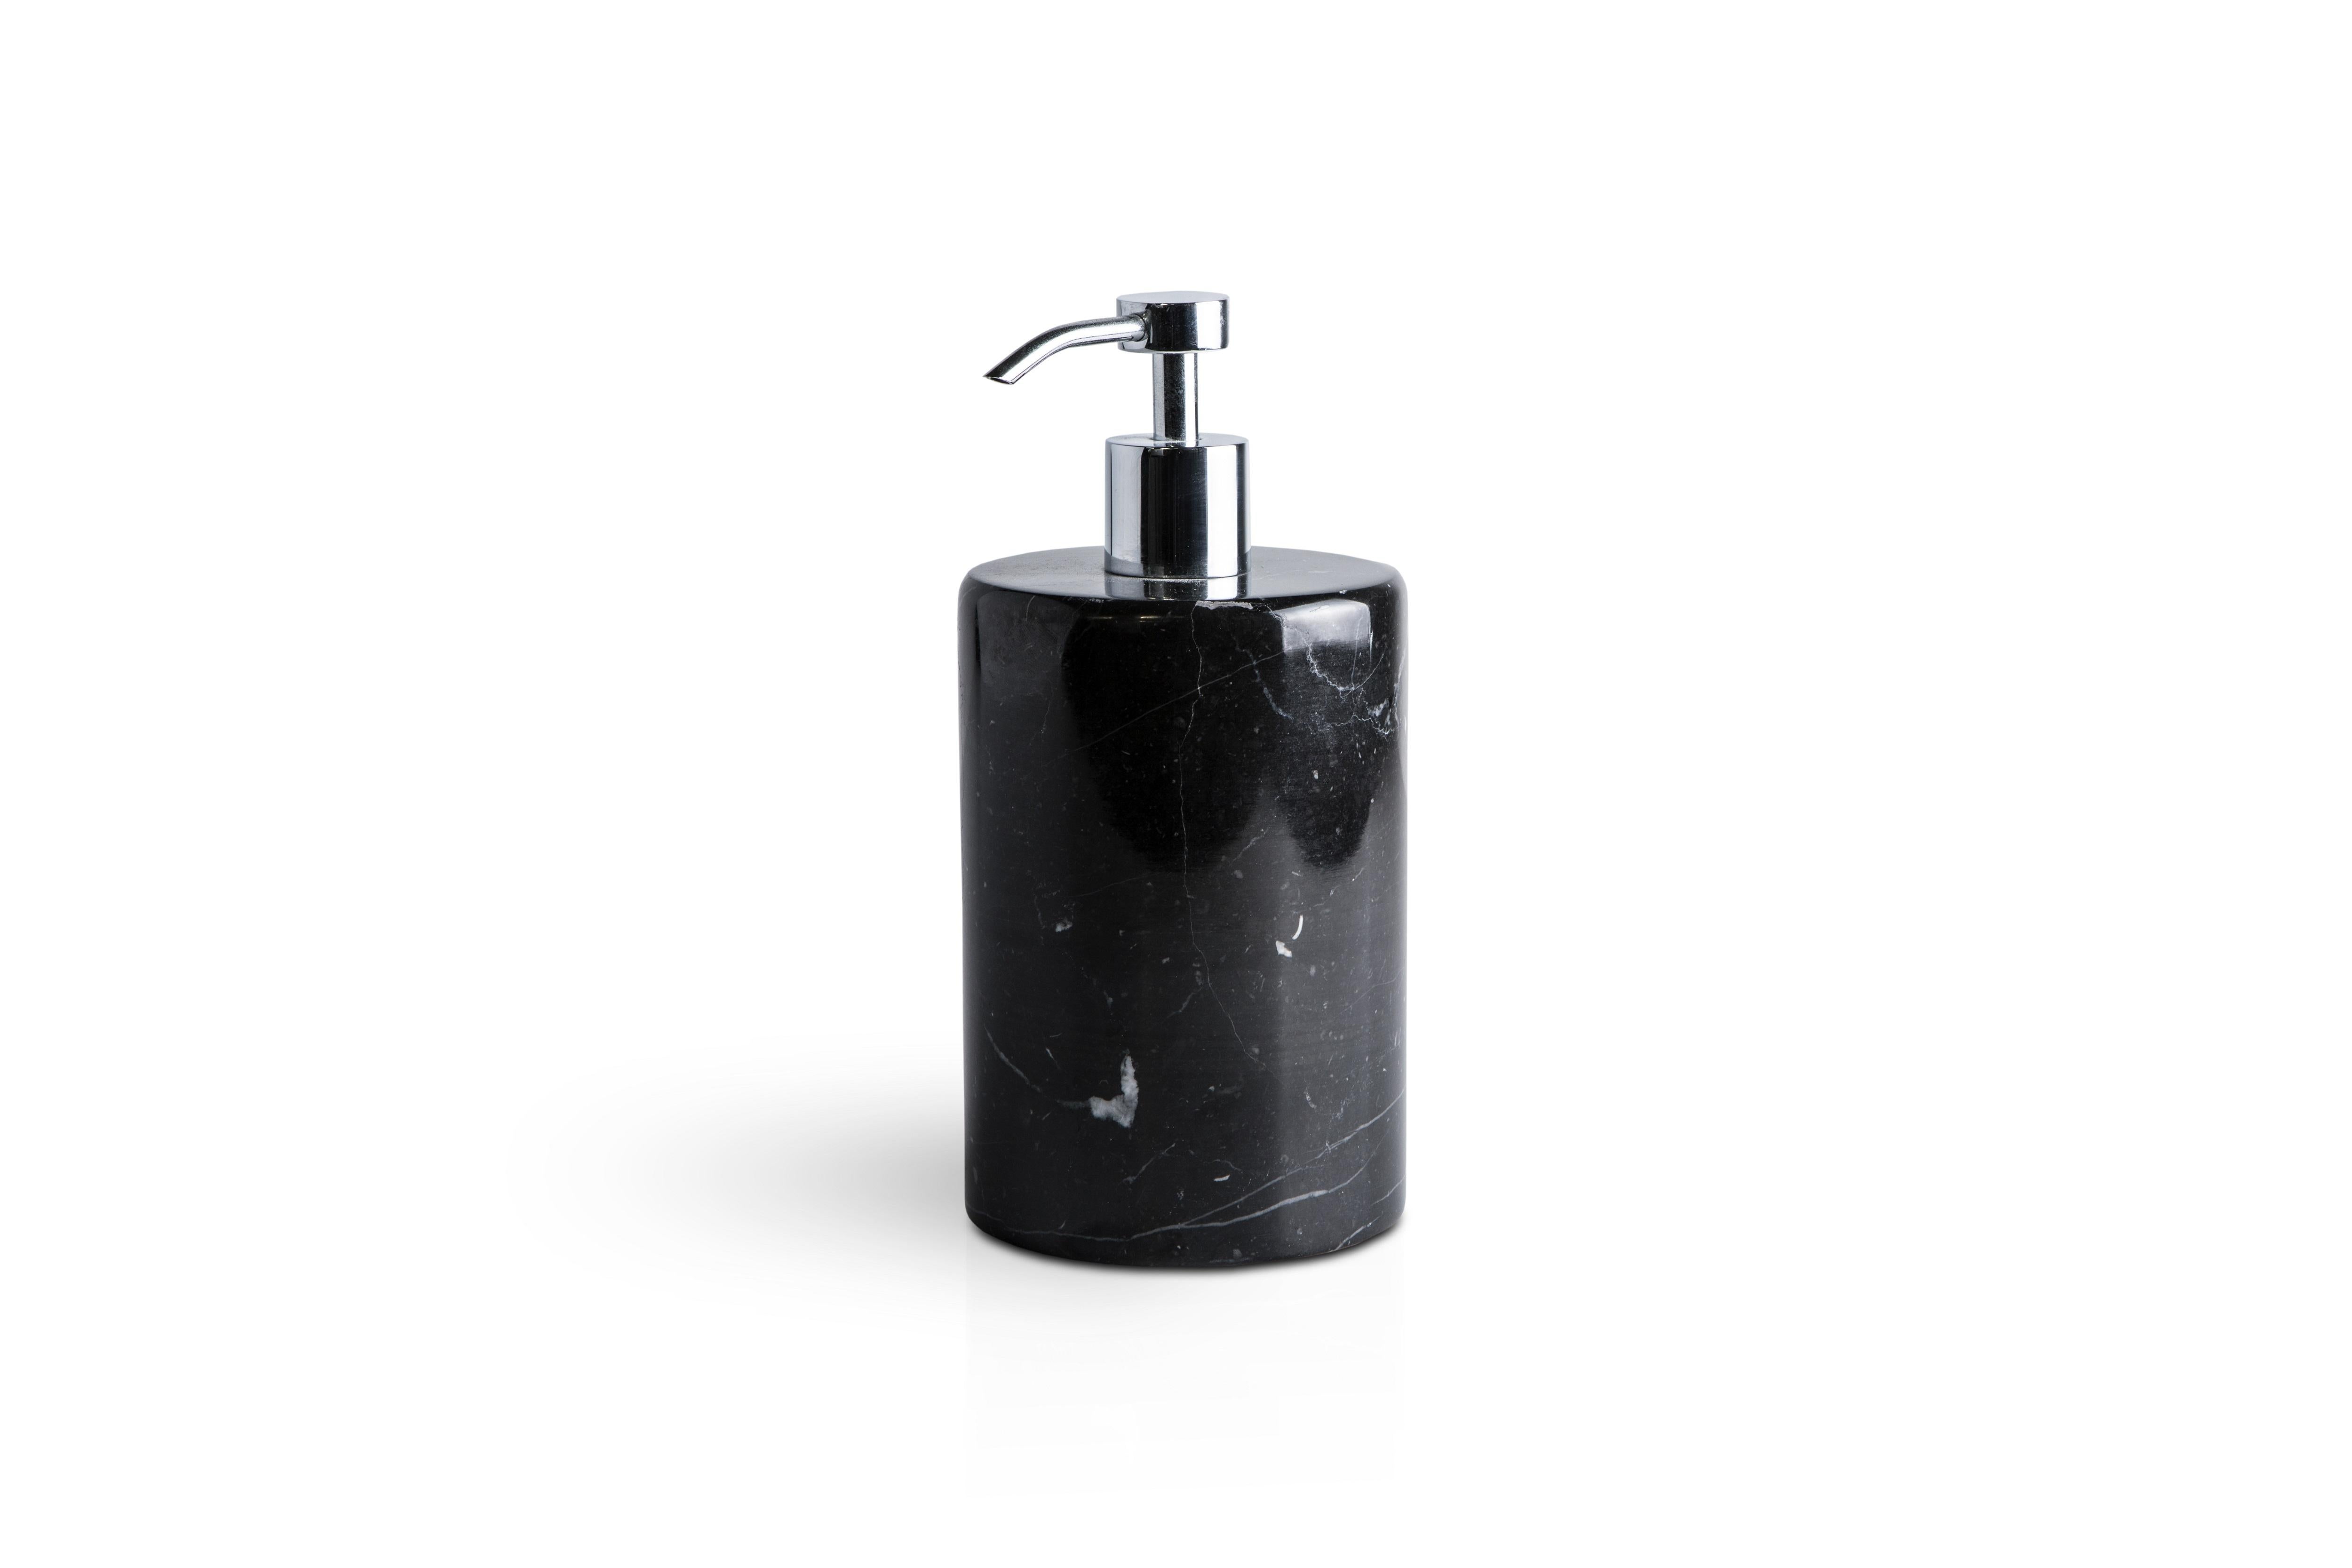 Ein abgerundetes Set für das Badezimmer aus schwarzem Marquina-Marmor, das Folgendes umfasst: Ein Seifenspender (Durchmesser 9 x 19,5 cm), ein Zahnbürstenhalter (Durchmesser 7 x 12 cm), eine Seifenschale (Durchmesser 10 x 2 cm).
Jedes Stück ist in